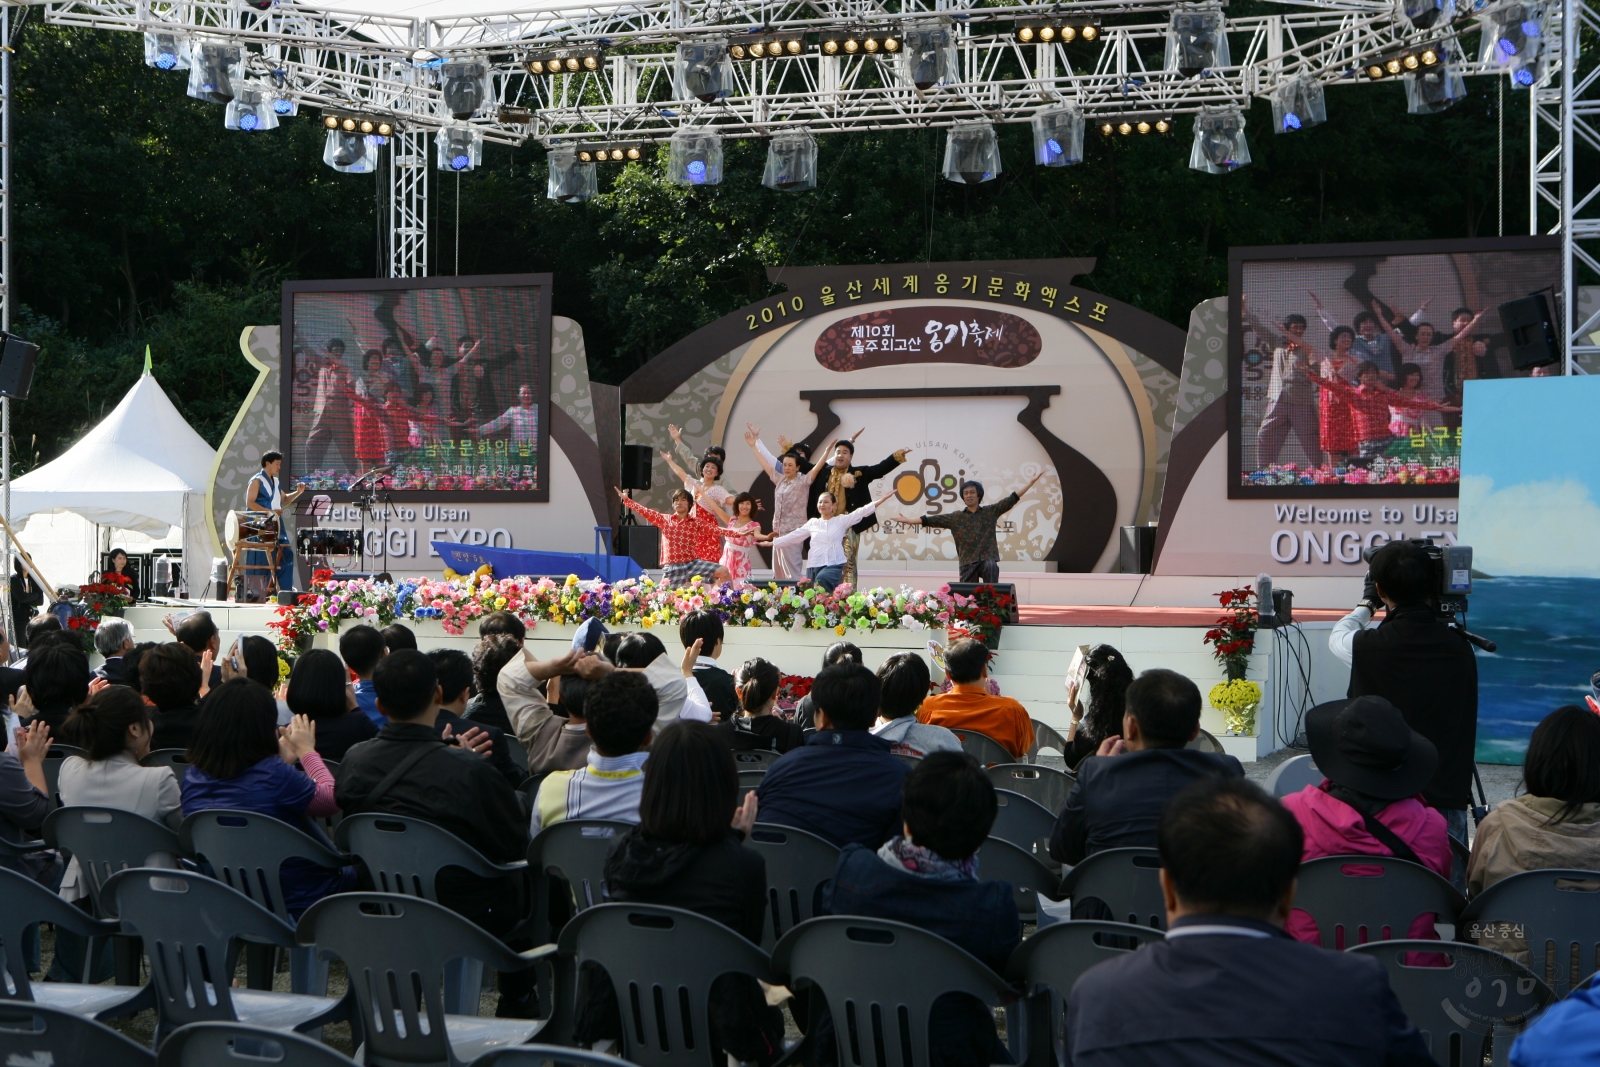 2010 울산세계옹기문화엑스포 울주외고산 옹기축제 의 사진